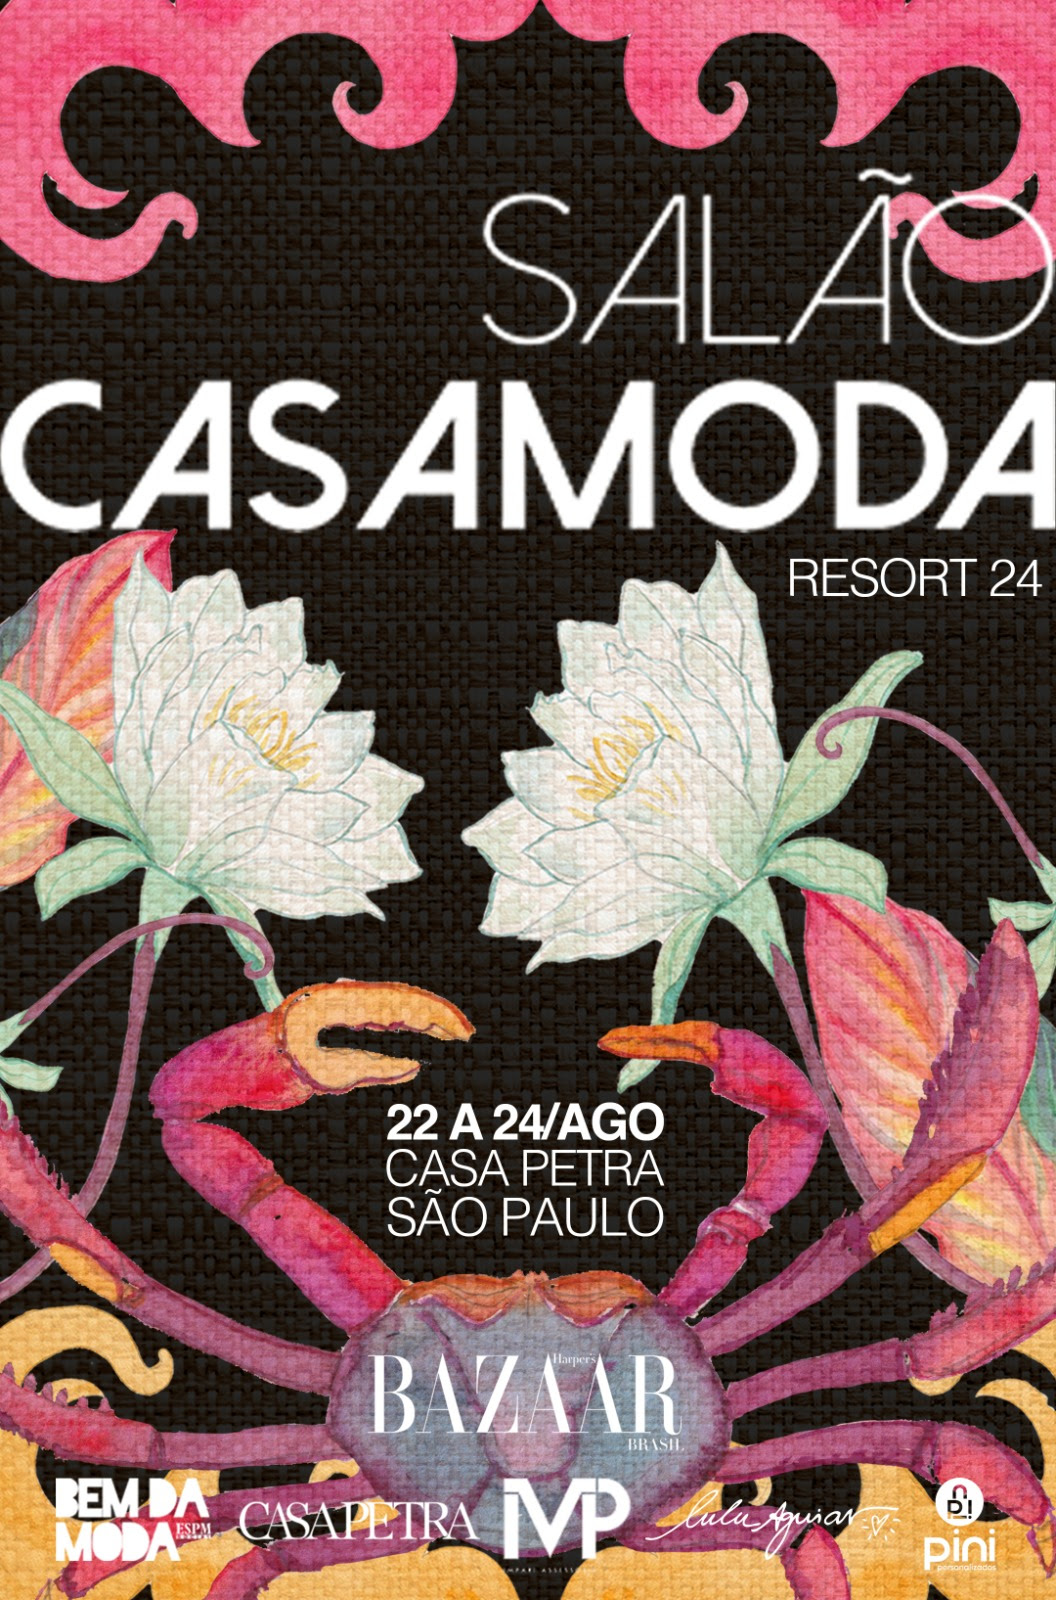 Salão Casamoda se consolida como guardião da moda e das tradições brasileiras